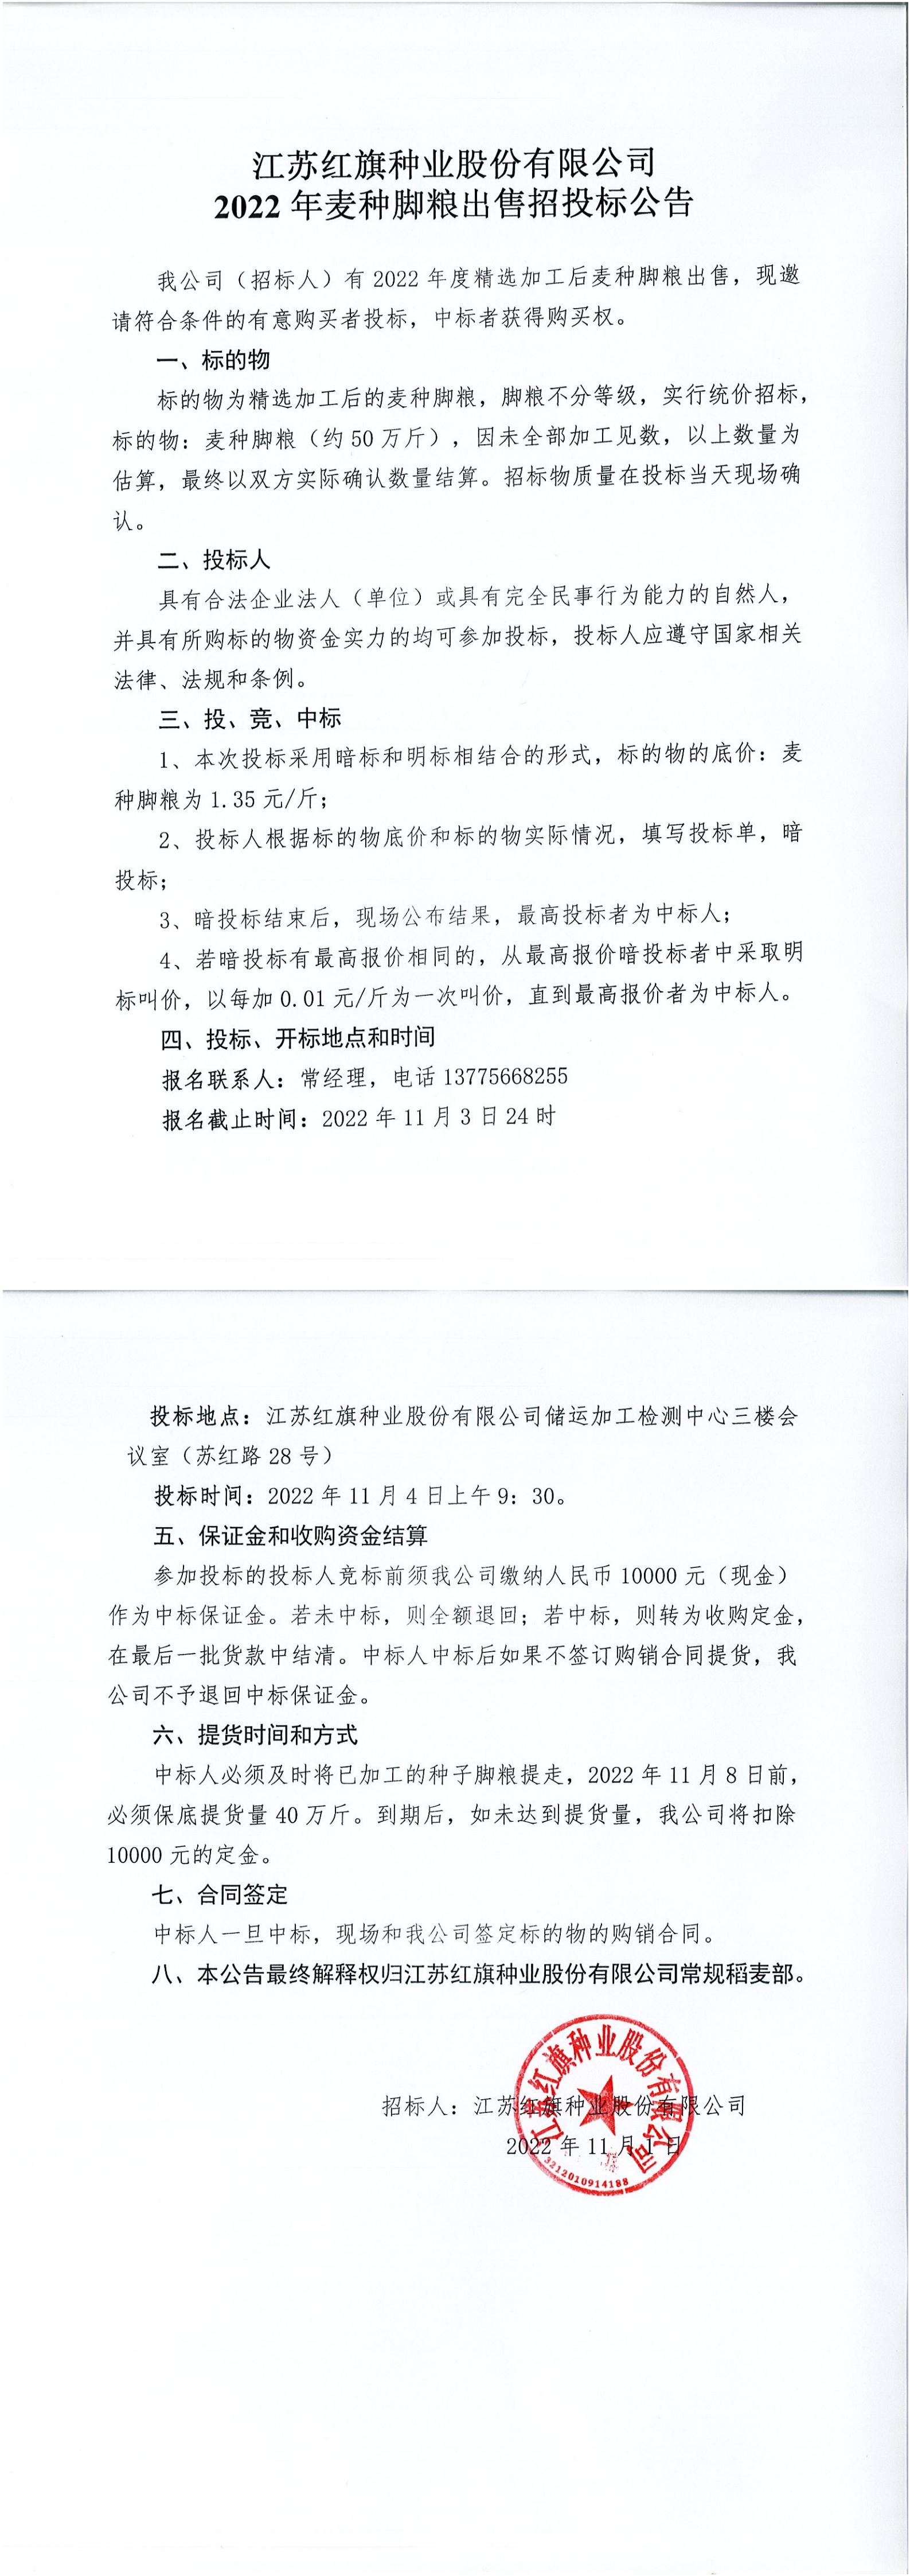 江苏博鱼体育官方网站种业股份有限公司2022年麦种脚粮出售招投标公告